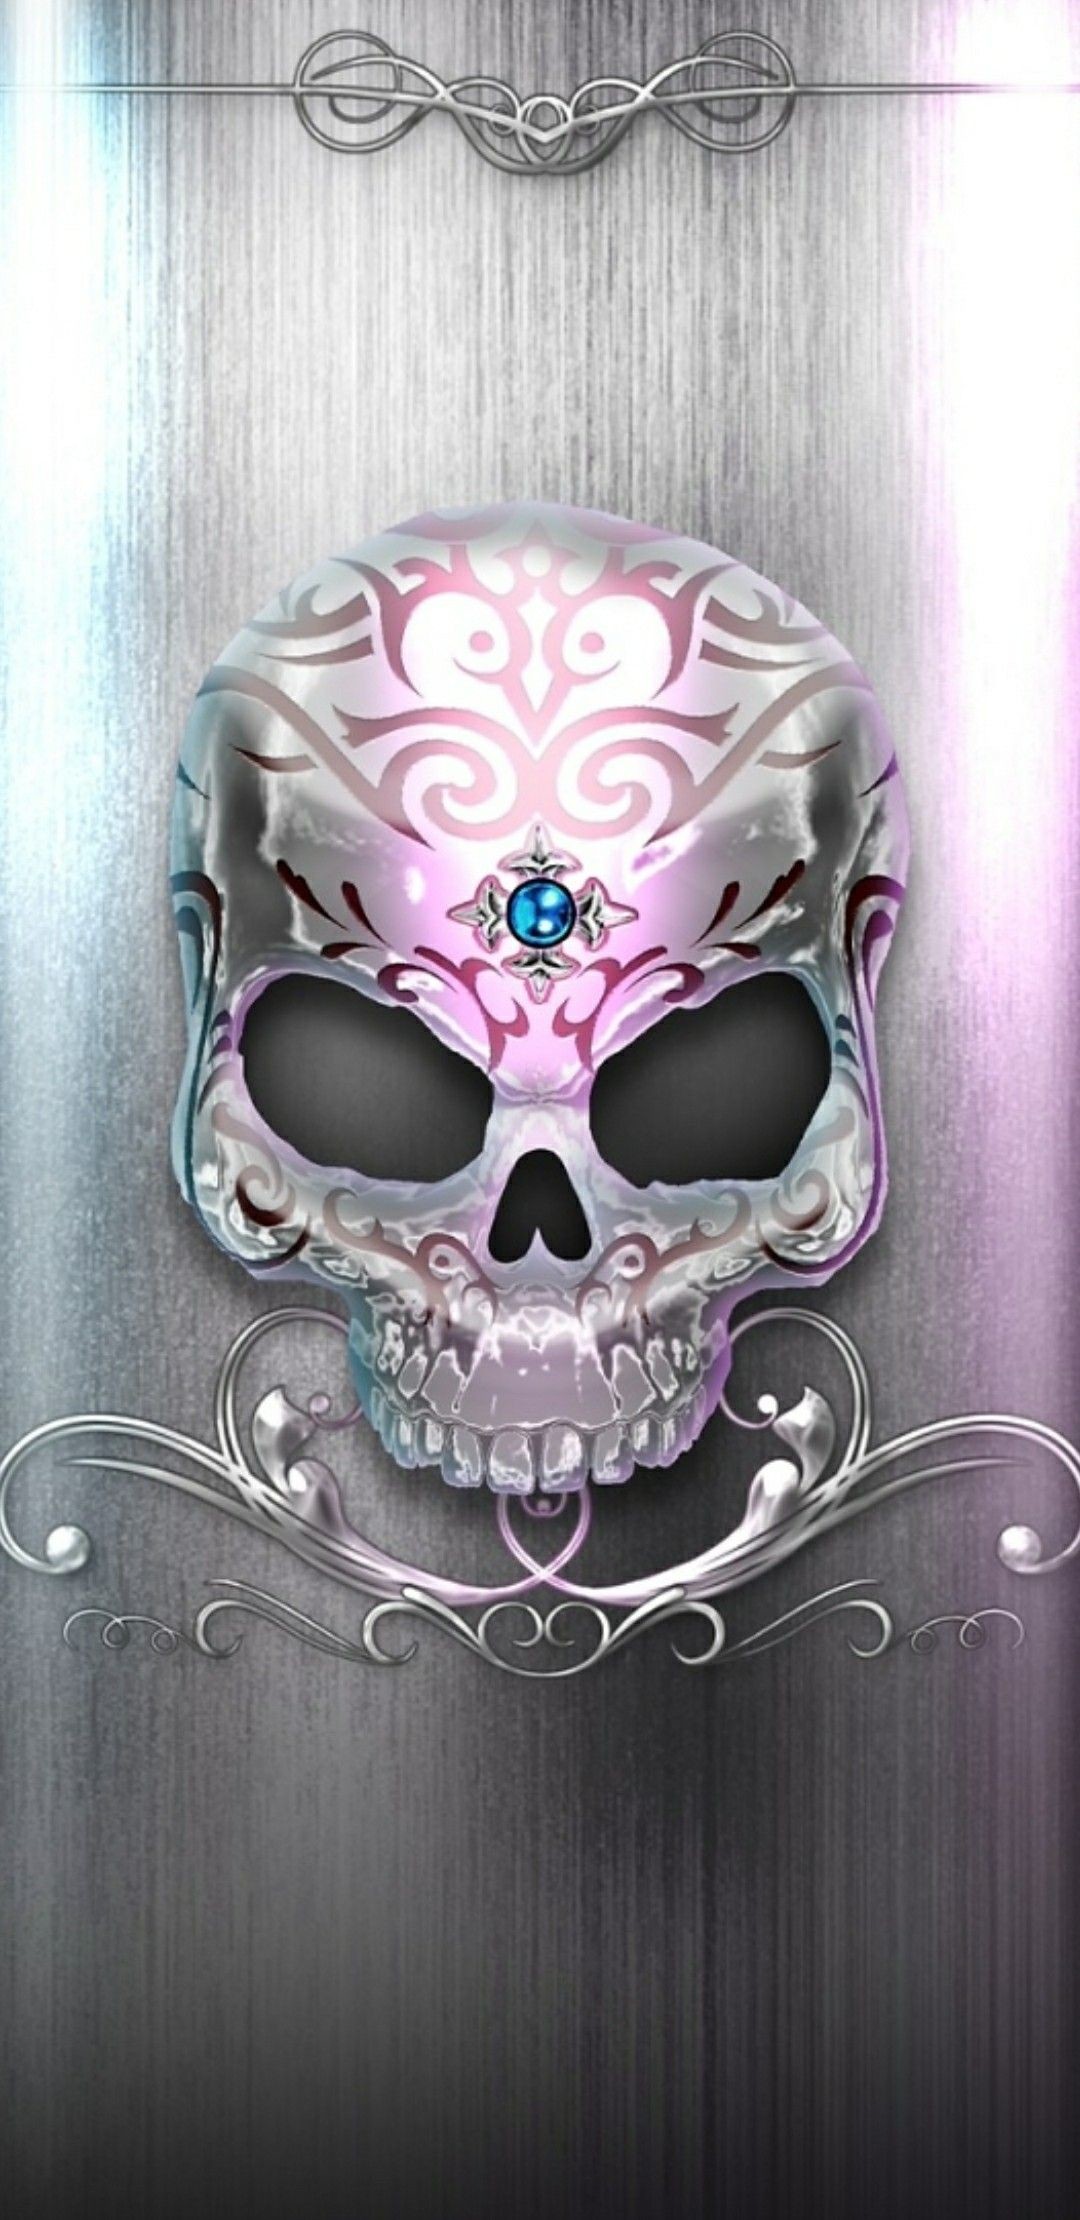 1080x2220 Skull Tattoos, Virgo Tattoos, Sugar Skull Artwork, Sugar Skull Drawings, Sugar  Skull